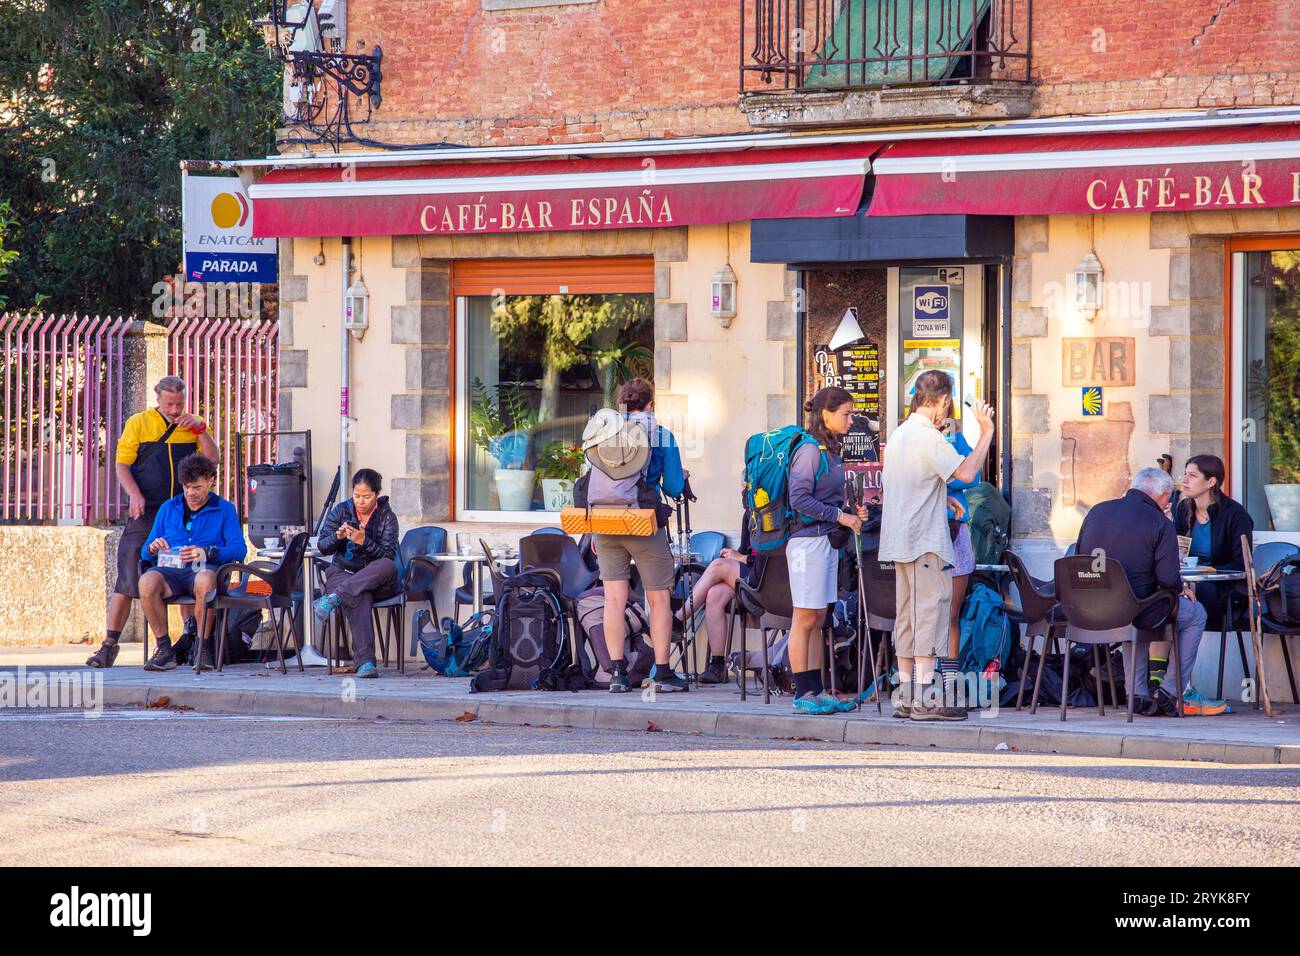 Pilger ruhen sich vor der Café-Bar Espana in der spanischen Stadt Carrion Spanien aus, nachdem sie den Jakobsweg entlang gegangen sind Stockfoto